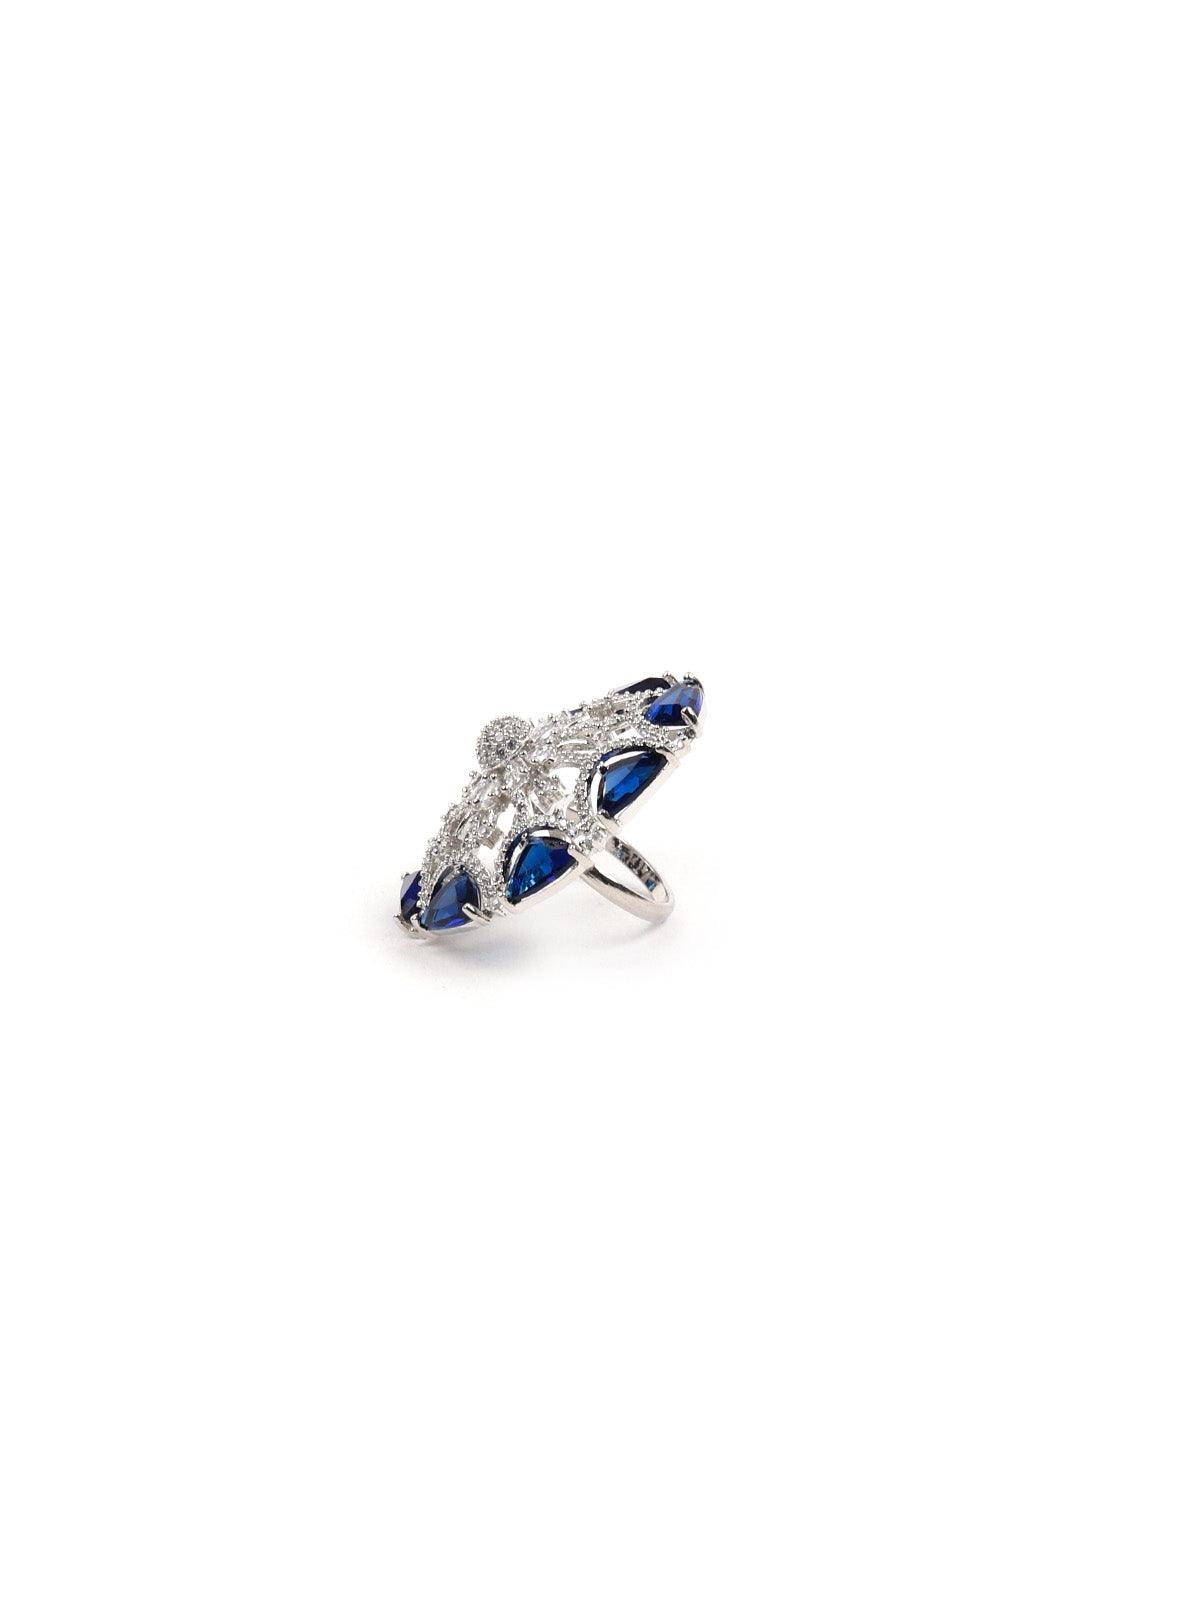 BLUE DIAMONDS EMBELLISHED RING - Odette